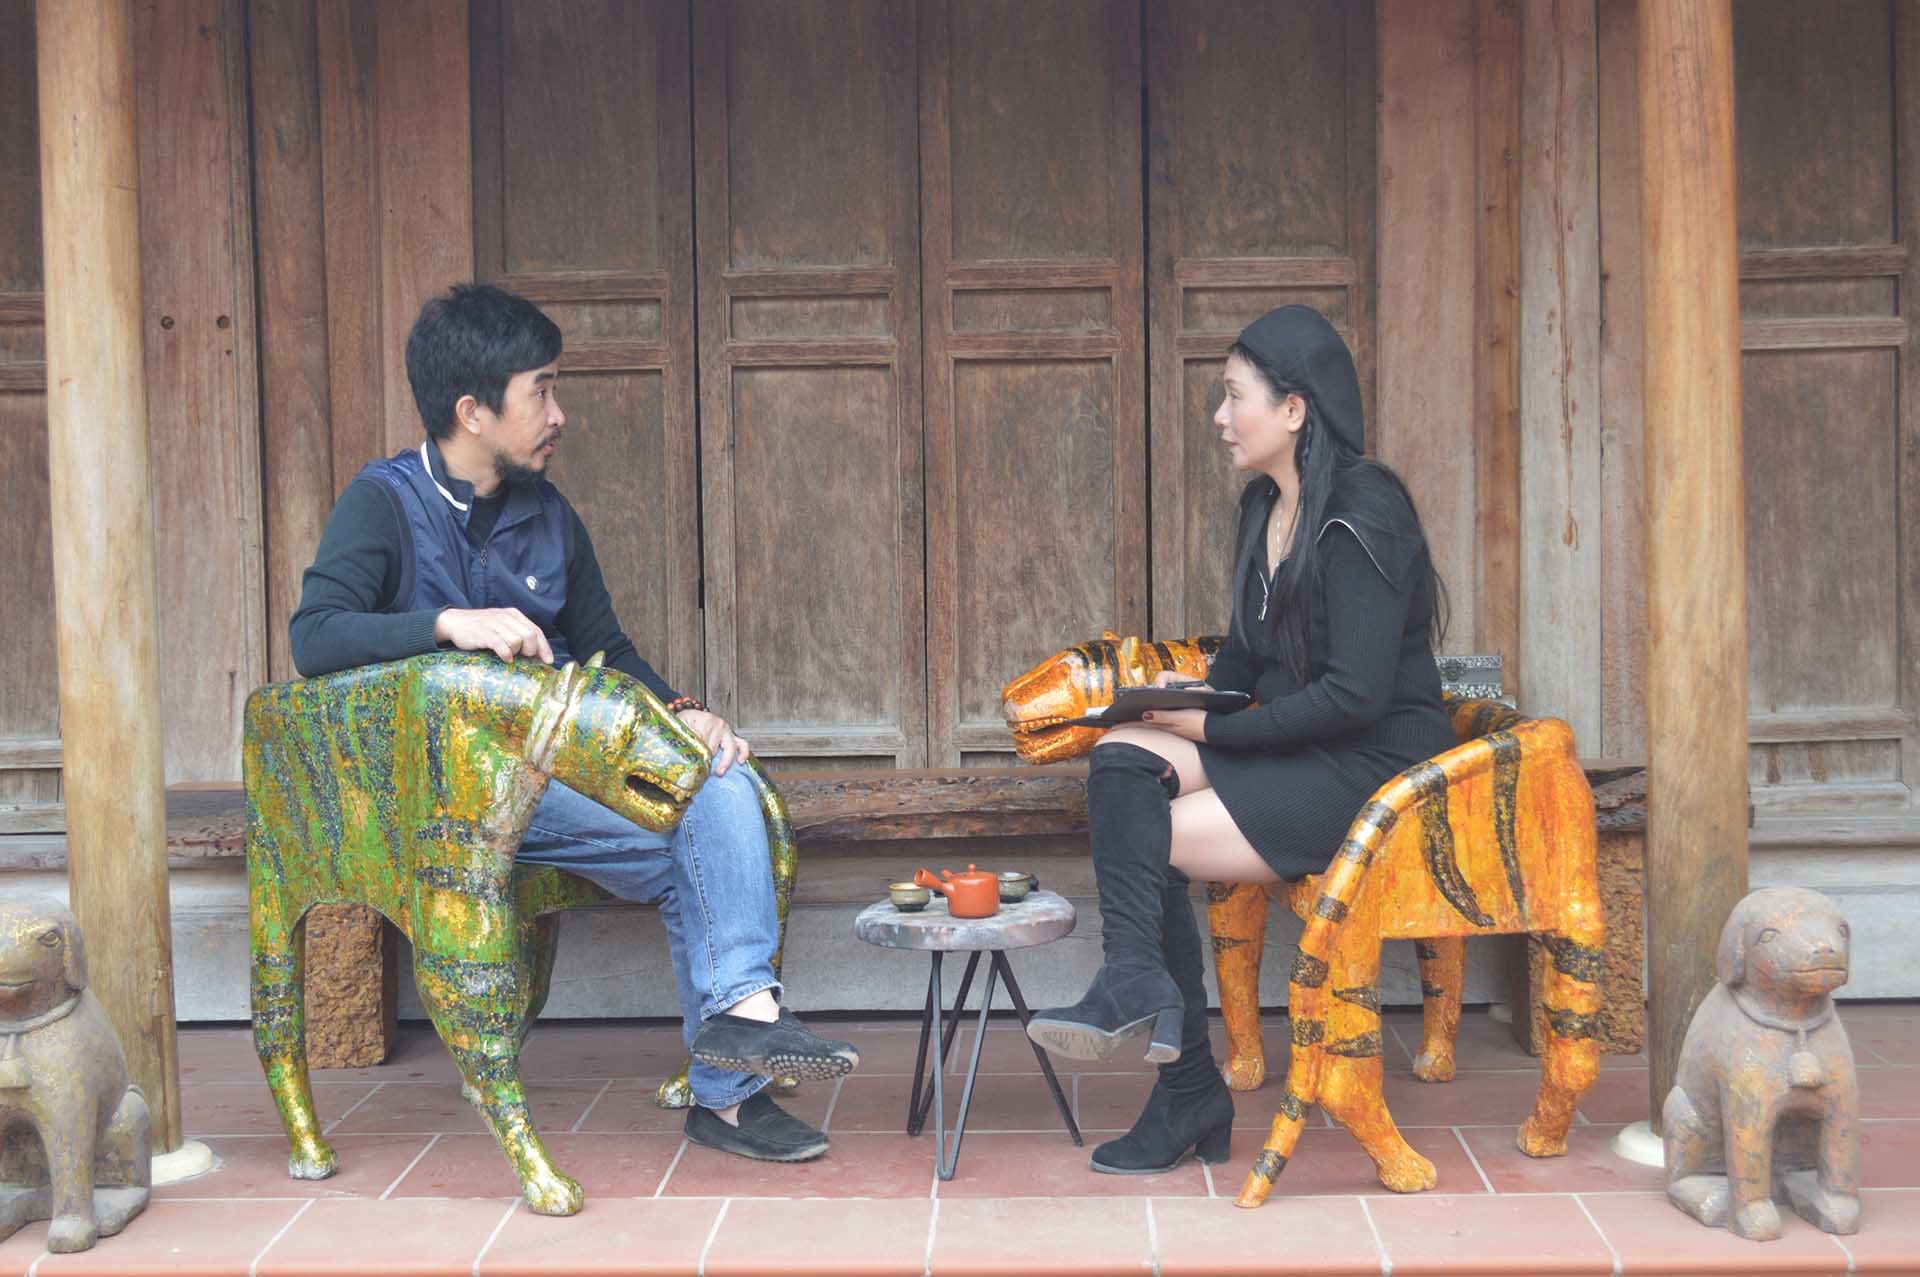 Họa sĩ, nghệ nhân Nguyễn Tấn Phát (trái) trao đổi với phóng viên về nghệ thuật sơn mài truyền thống và những tạo tác mới về hổ. (Ảnh: Nguyễn Mạnh Cường)